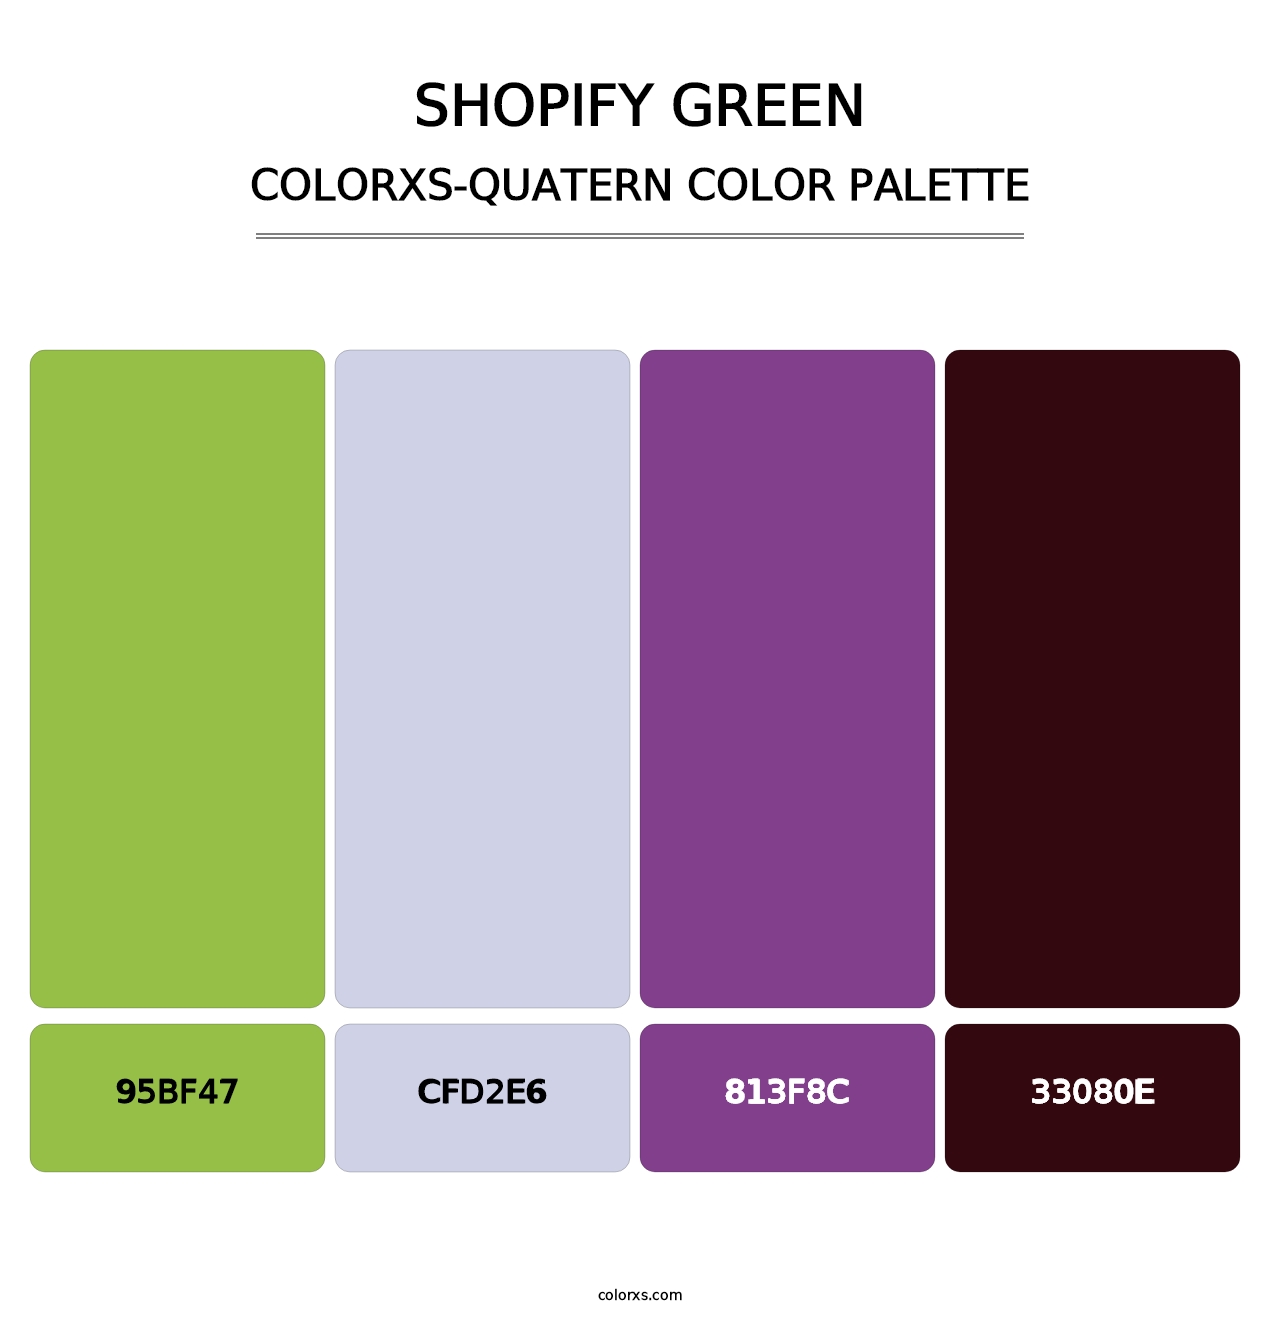 Shopify Green - Colorxs Quatern Palette